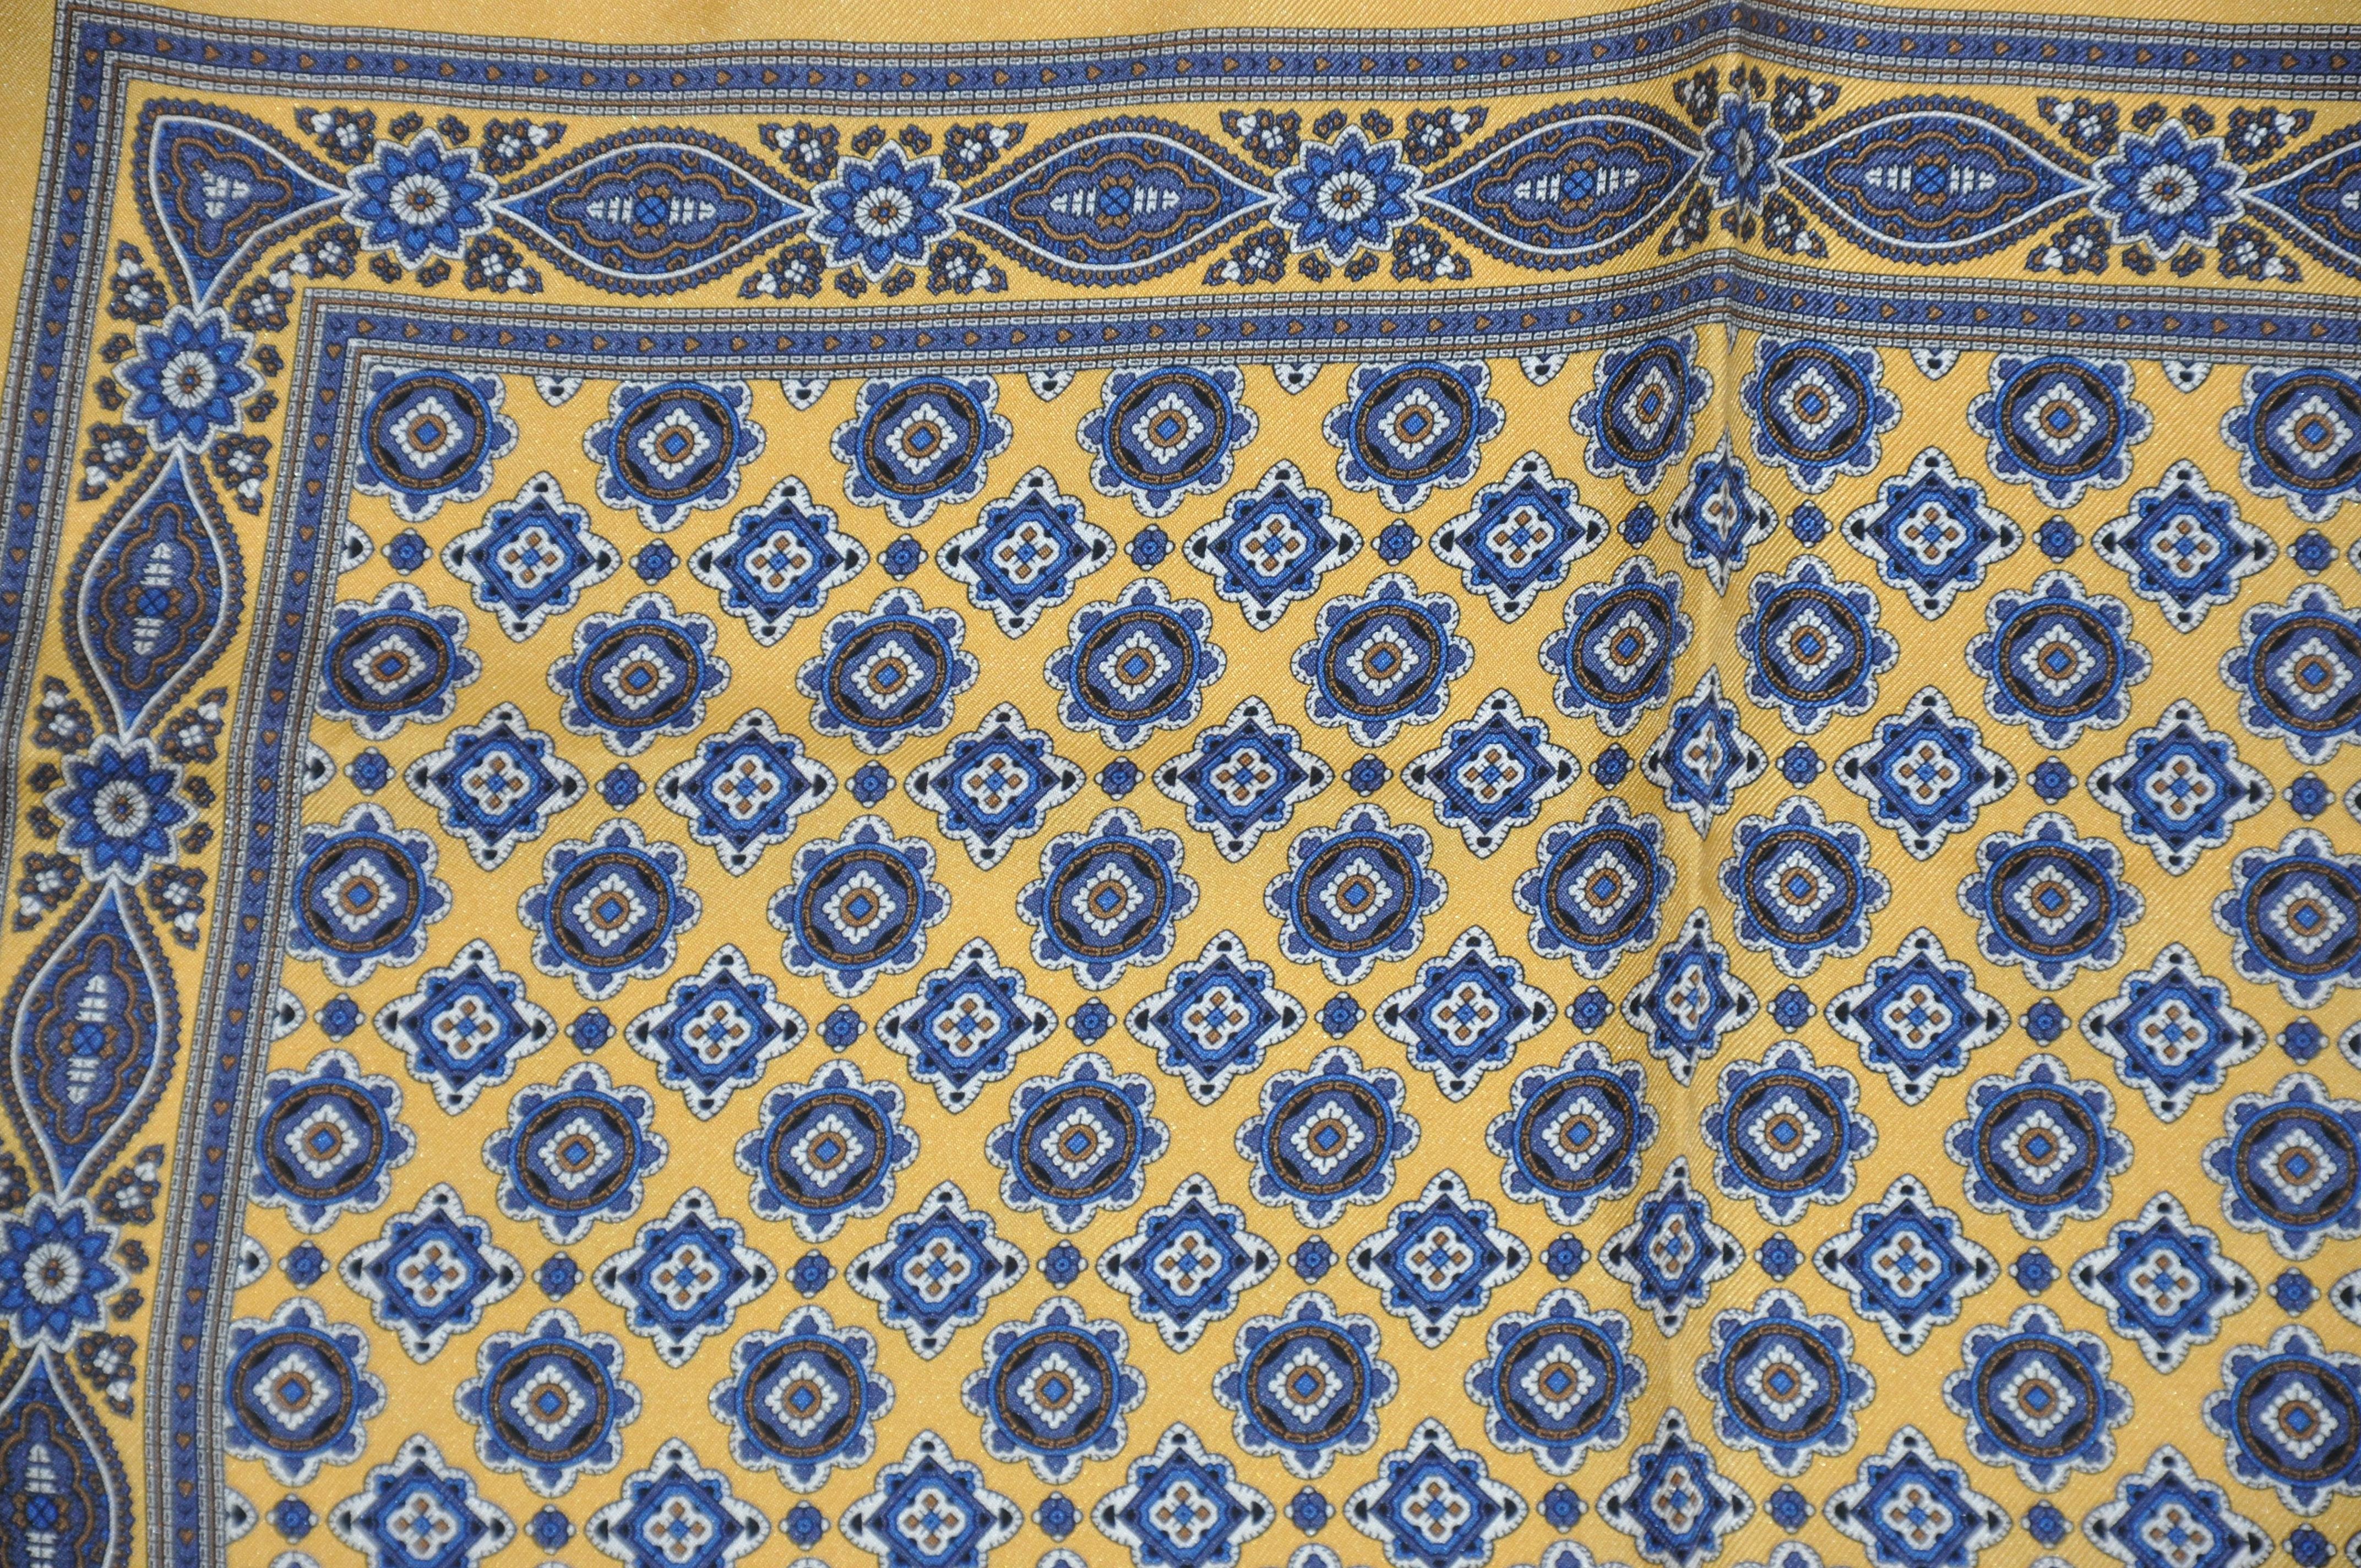      Diese wunderbar elegante Herren Seidentaschentuch mit goldenen Grenzen rund um majestätische Multi-blaue Mitte Seide Taschentuch mit handgerollten Kanten akzentuiert, misst 17 Zoll von 17 Zoll. Hergestellt in Italien.